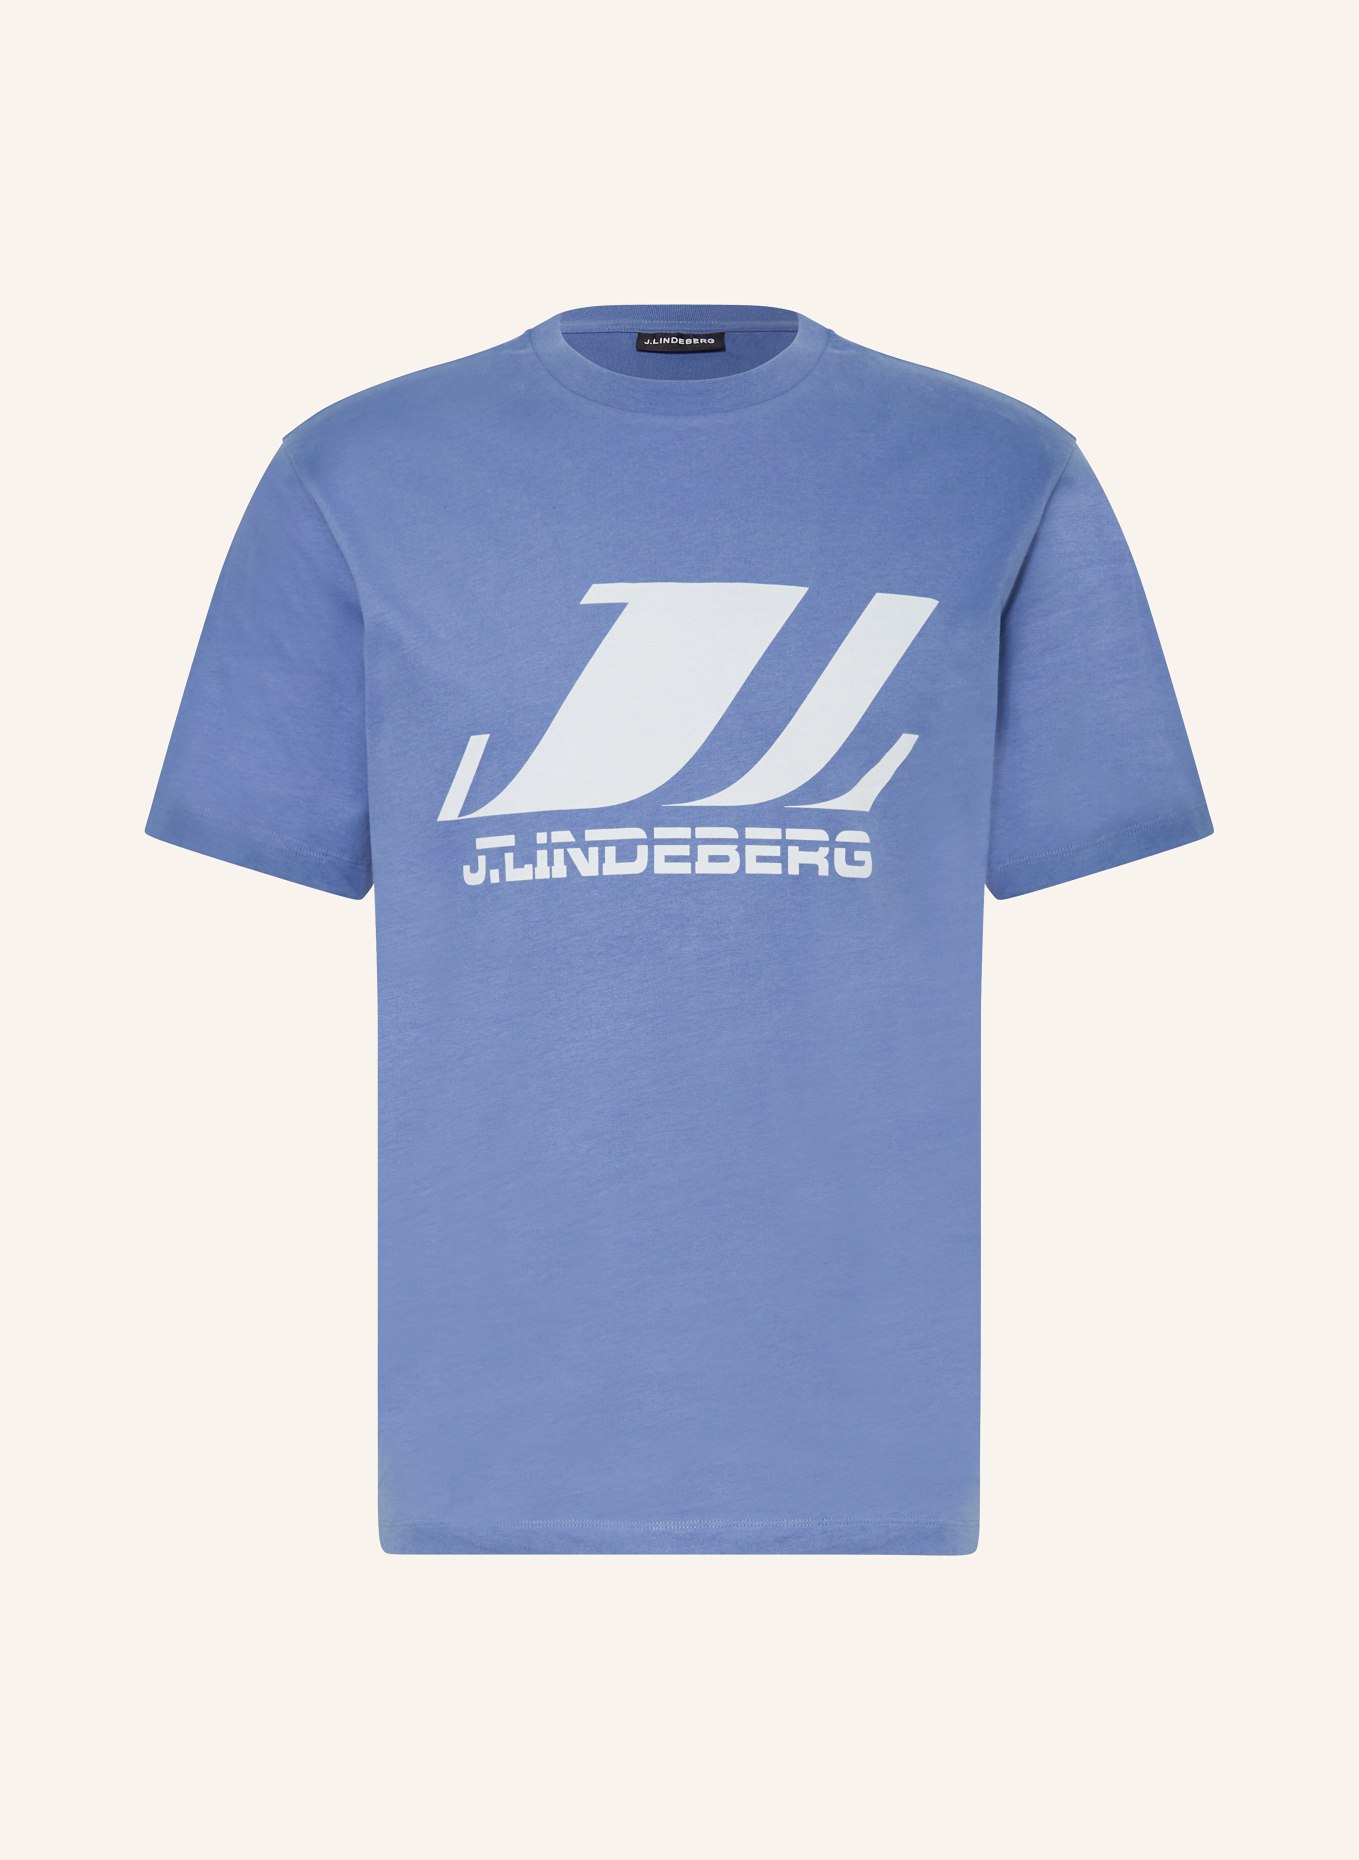 J.LINDEBERG T-shirt, Color: BLUE (Image 1)